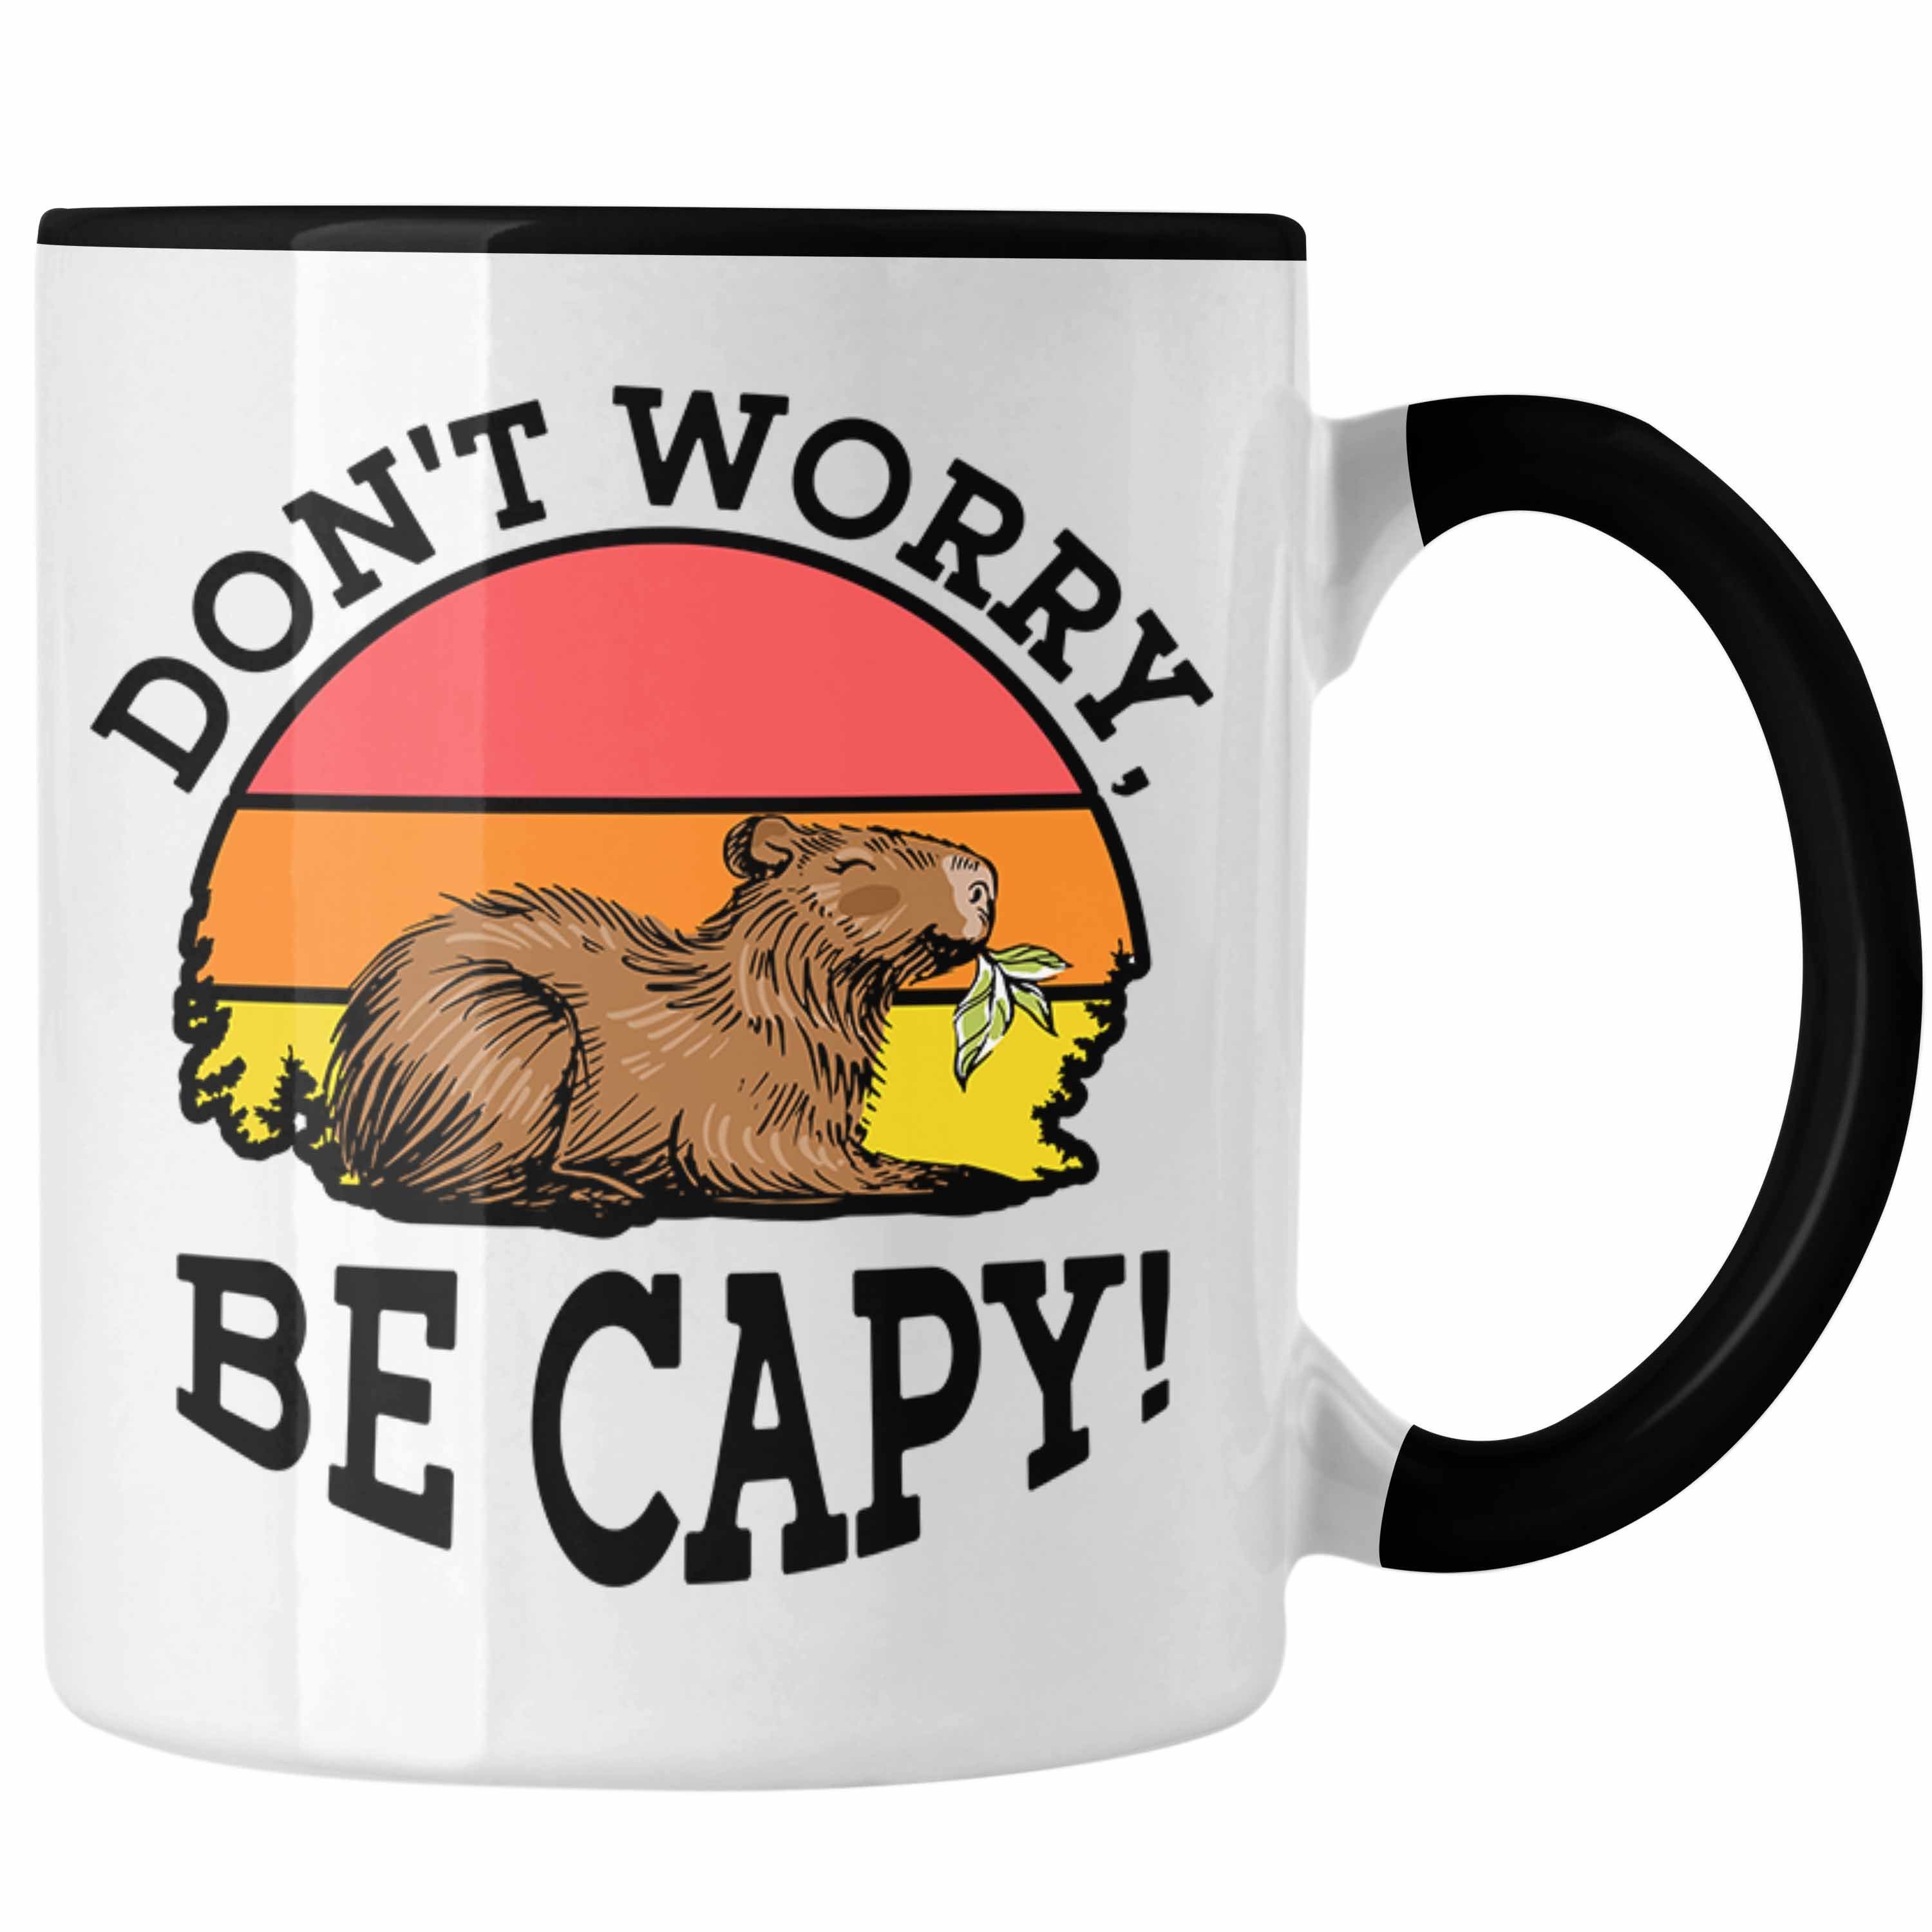 Trendation Tasse Lustige Tasse "Don't lustiges Capybara-Li Cappy" Be für Schwarz Geschenk Worry